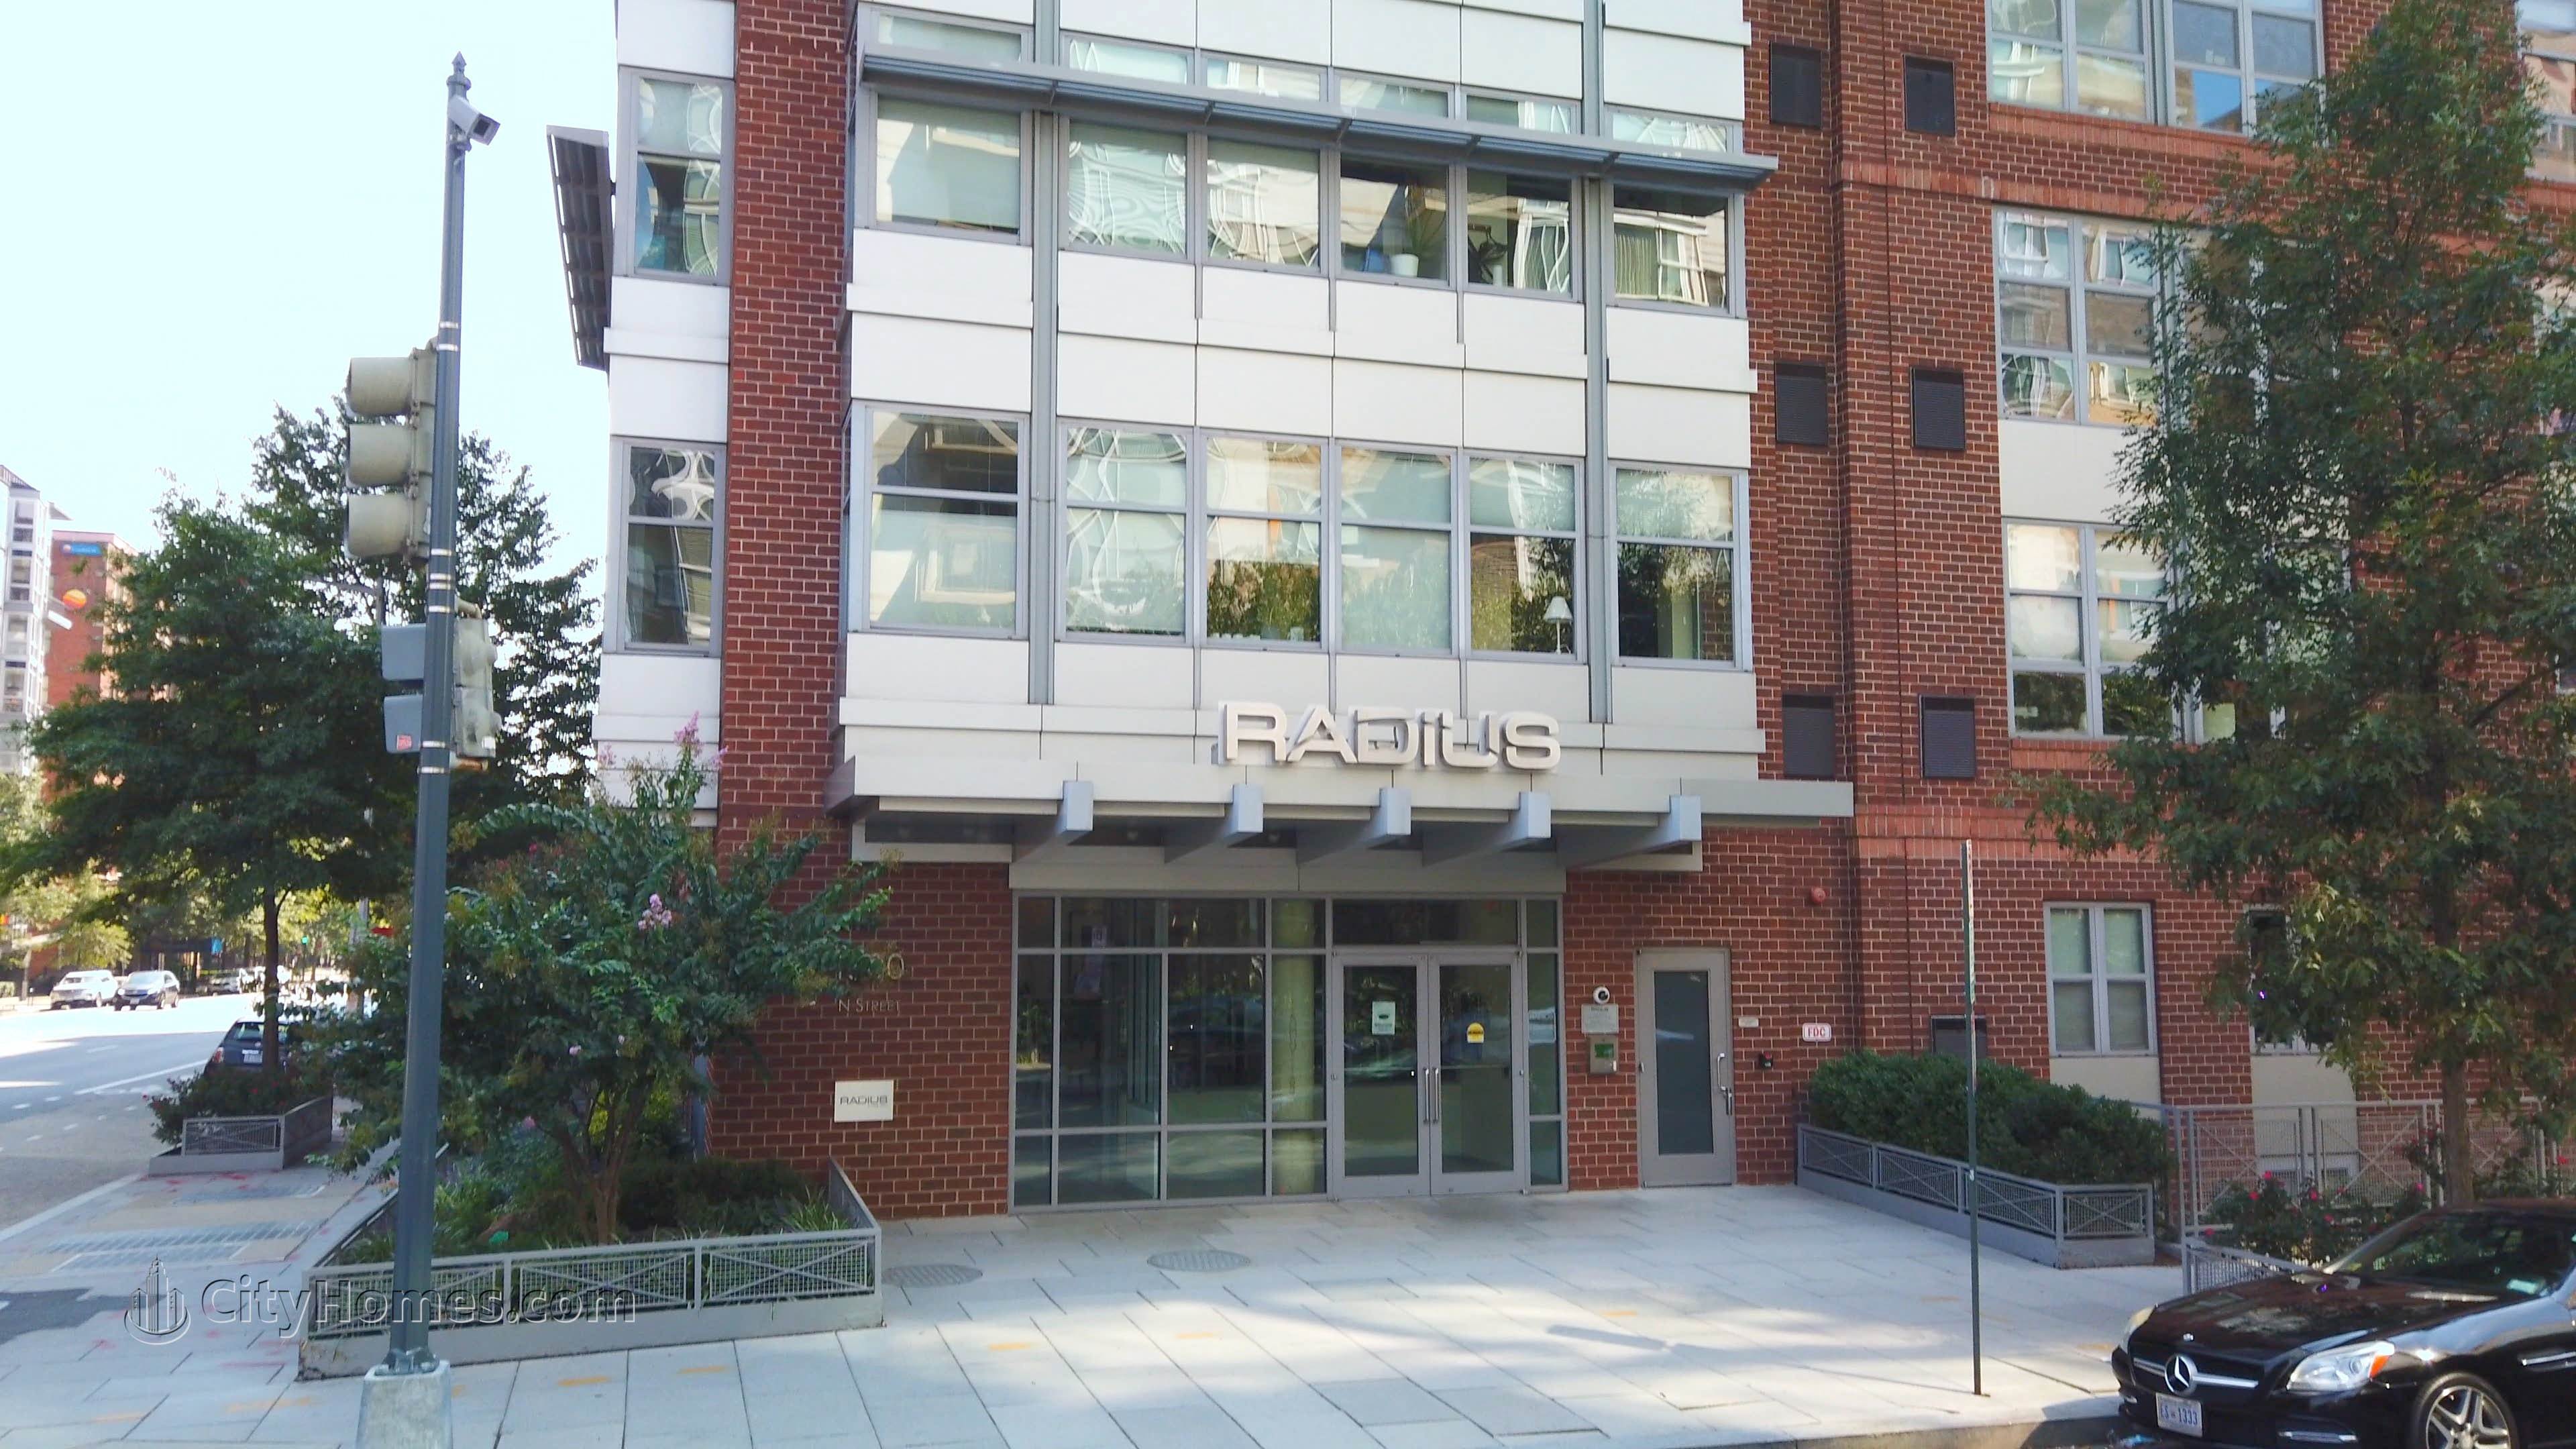 4. Radius Condos gebouw op 1300 N St NW, Logan Circle, Washington, DC 20005